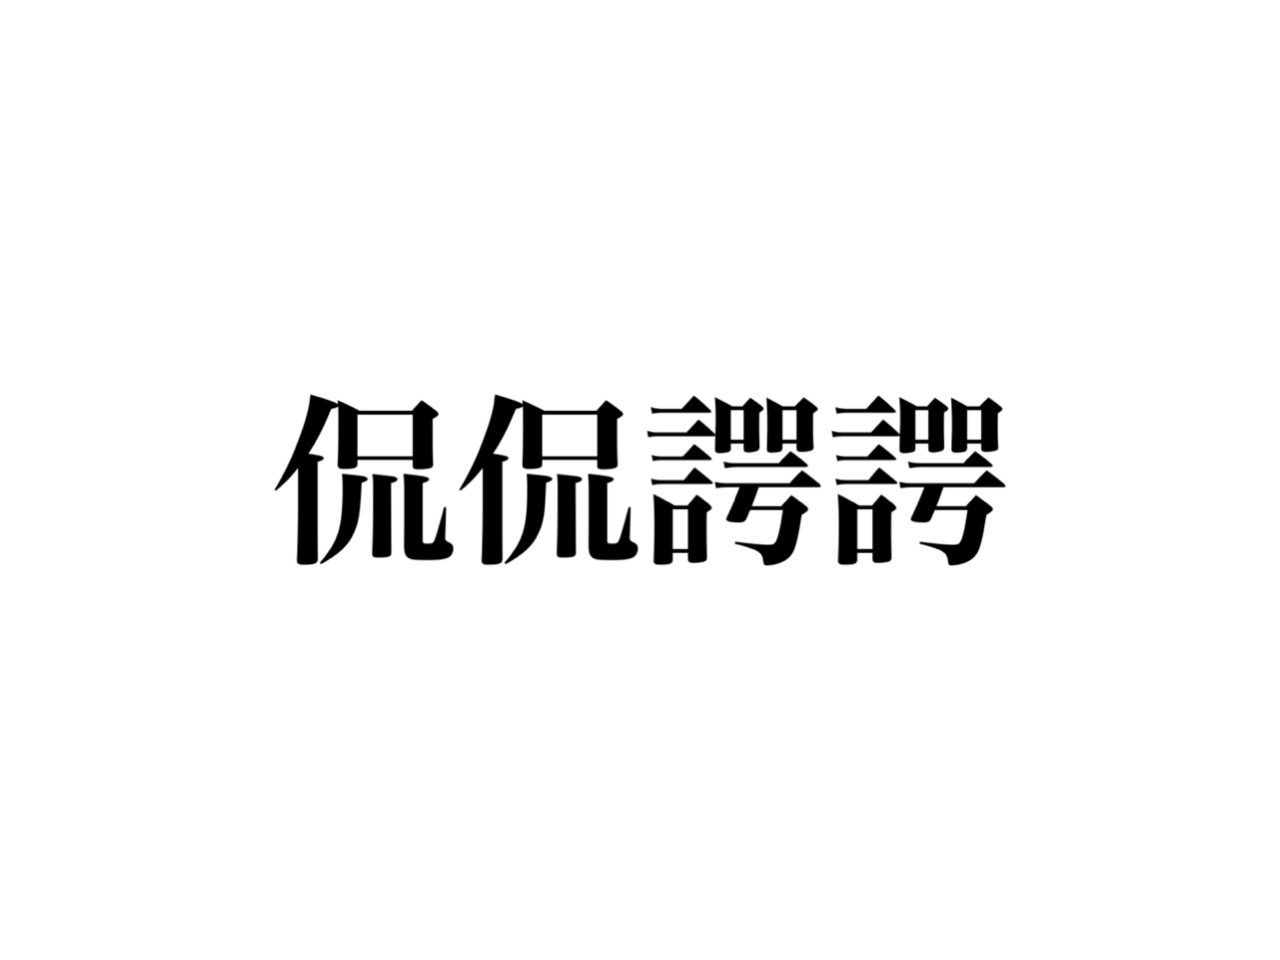 これが読めたら超すごい 四字熟語 侃侃諤諤 って読めますか Cancam Jp キャンキャン